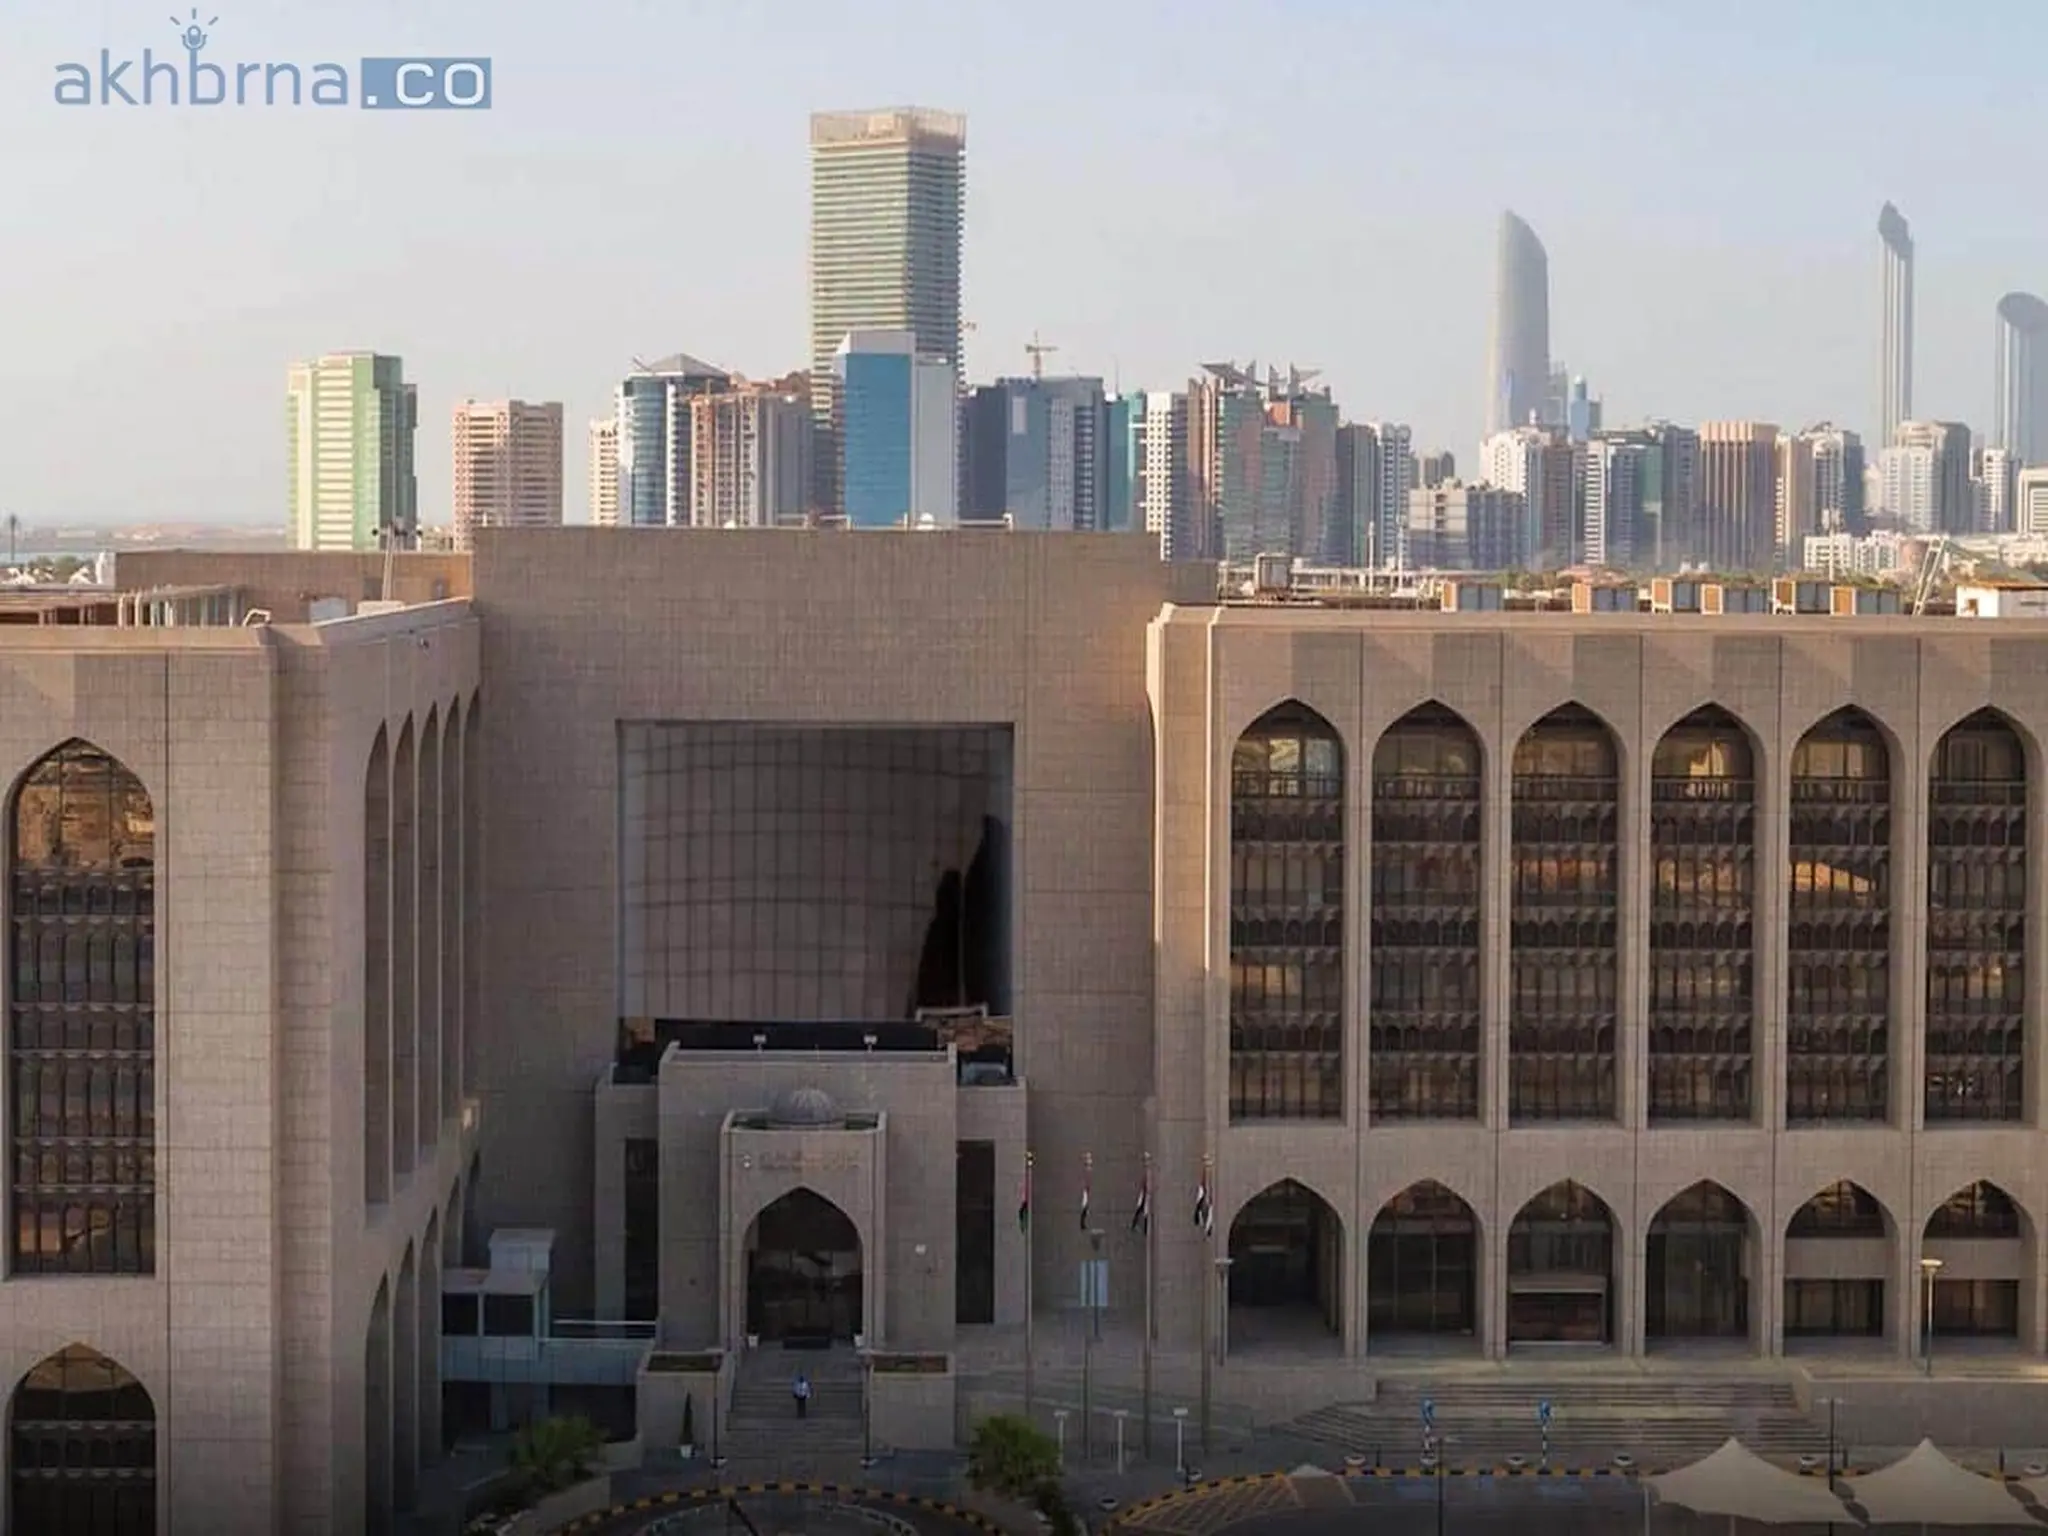 UAE central bank introduces program for risk-based supervision professionals